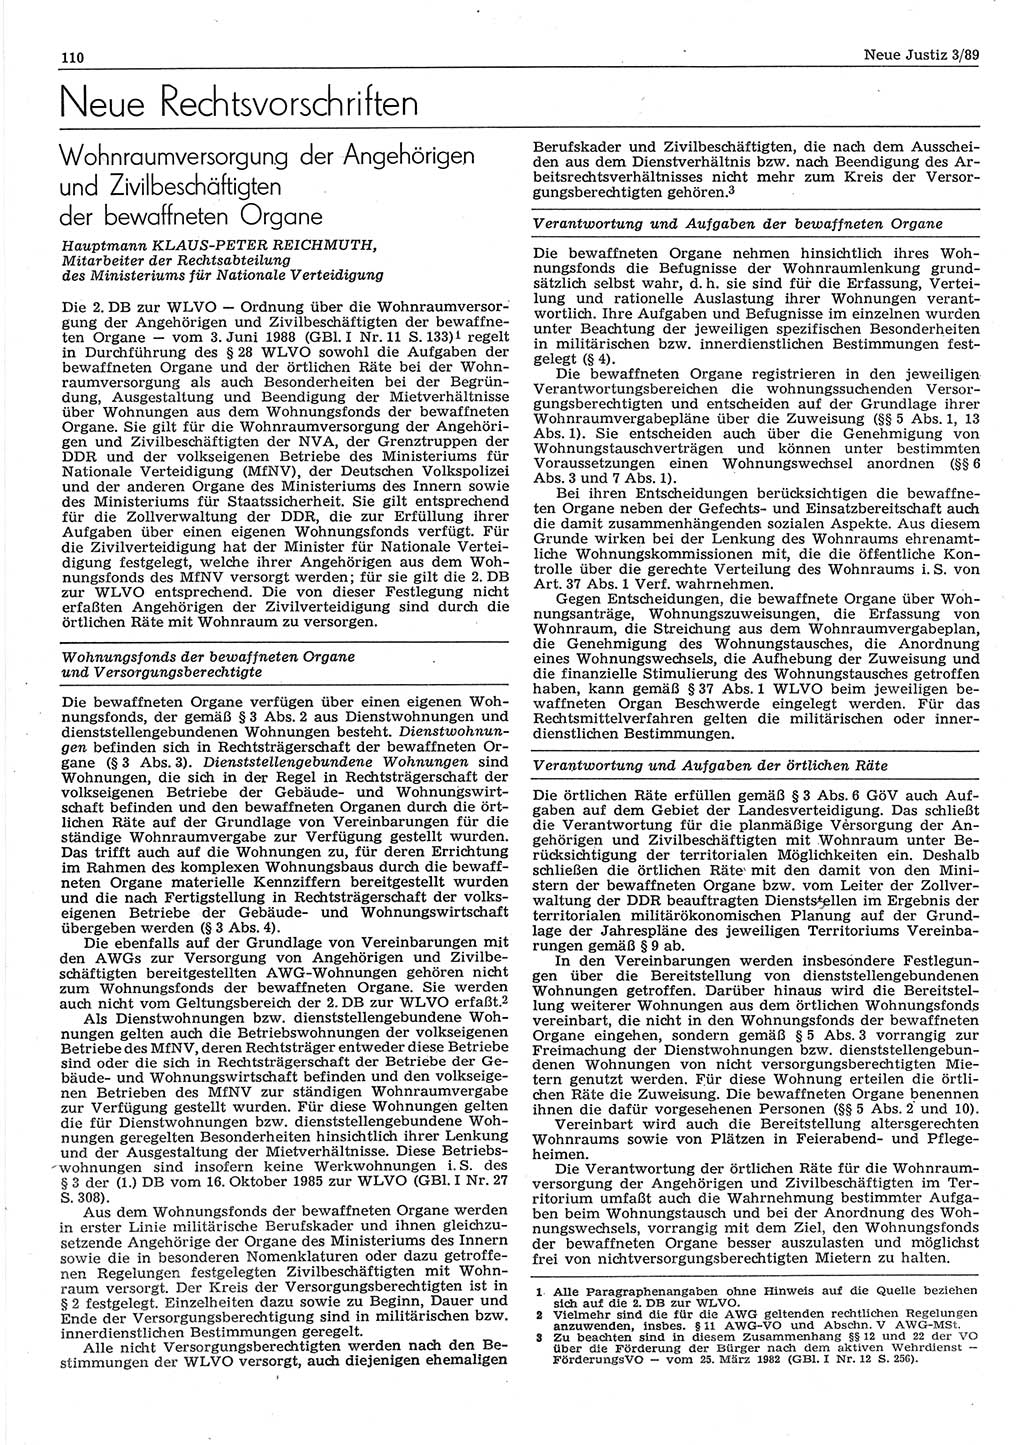 Neue Justiz (NJ), Zeitschrift für sozialistisches Recht und Gesetzlichkeit [Deutsche Demokratische Republik (DDR)], 43. Jahrgang 1989, Seite 110 (NJ DDR 1989, S. 110)